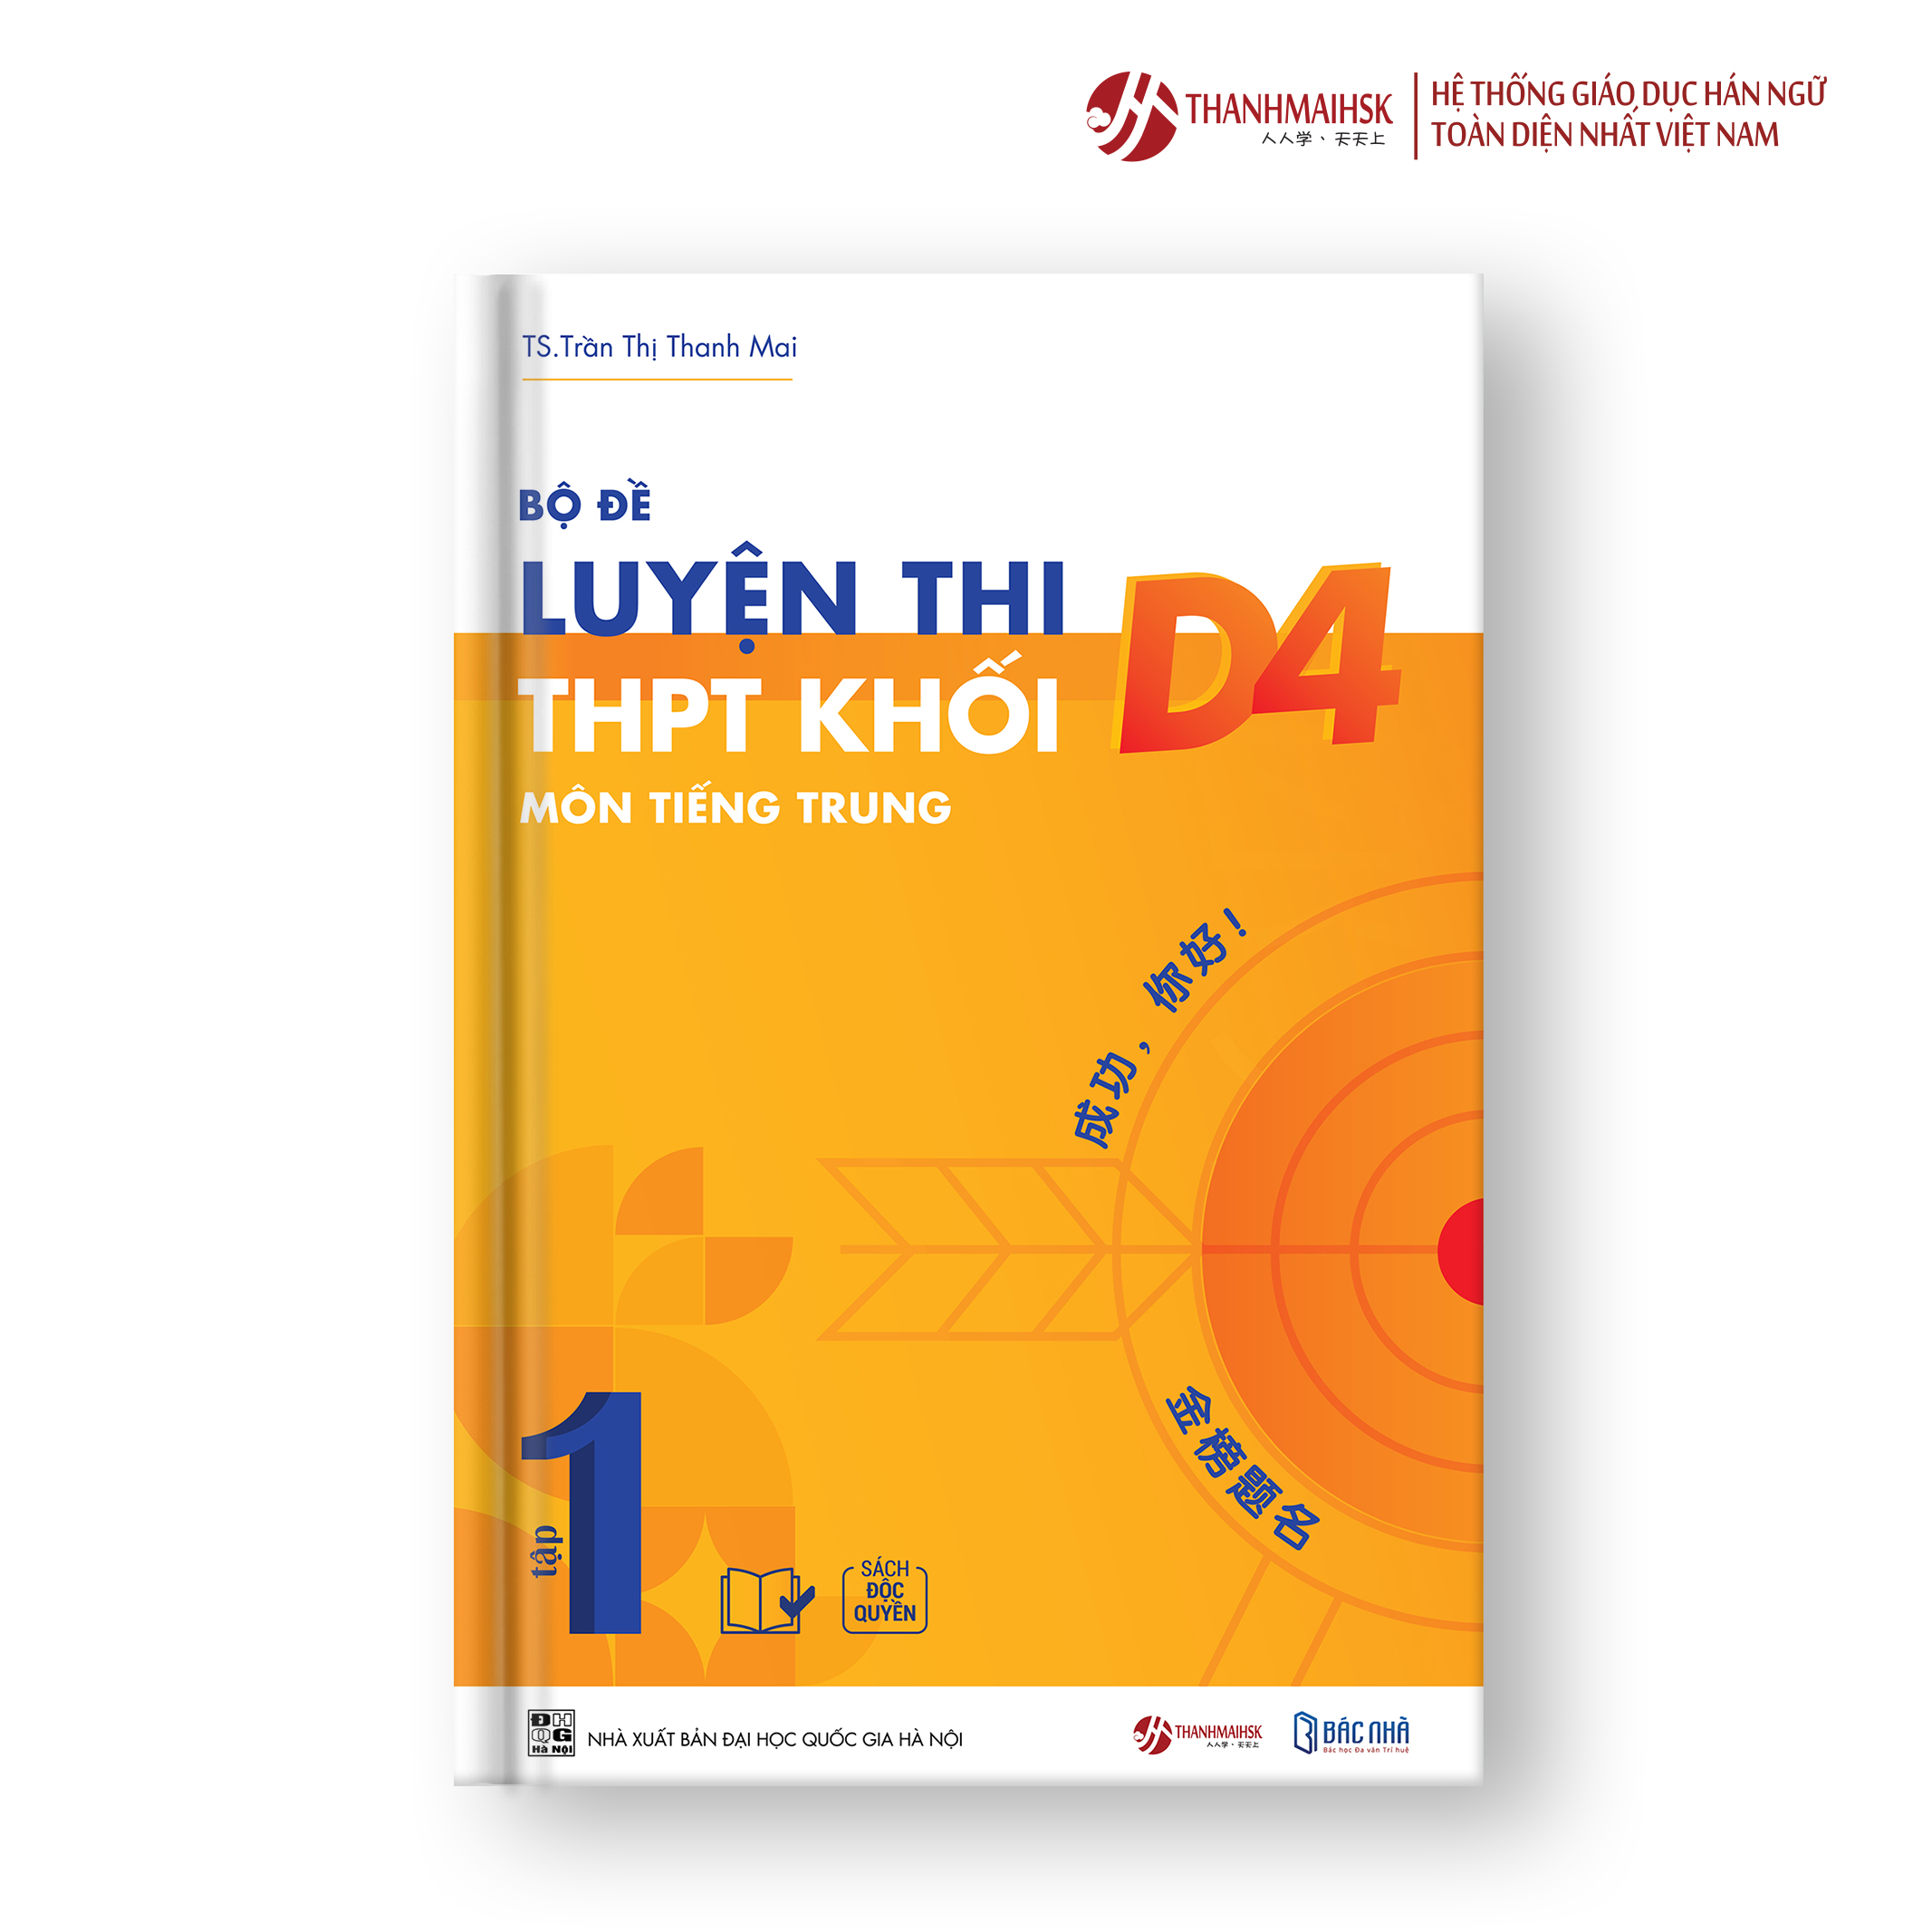 Sách Bộ đề luyện thi THPT khố D4 môn tiếng Trung tập 1